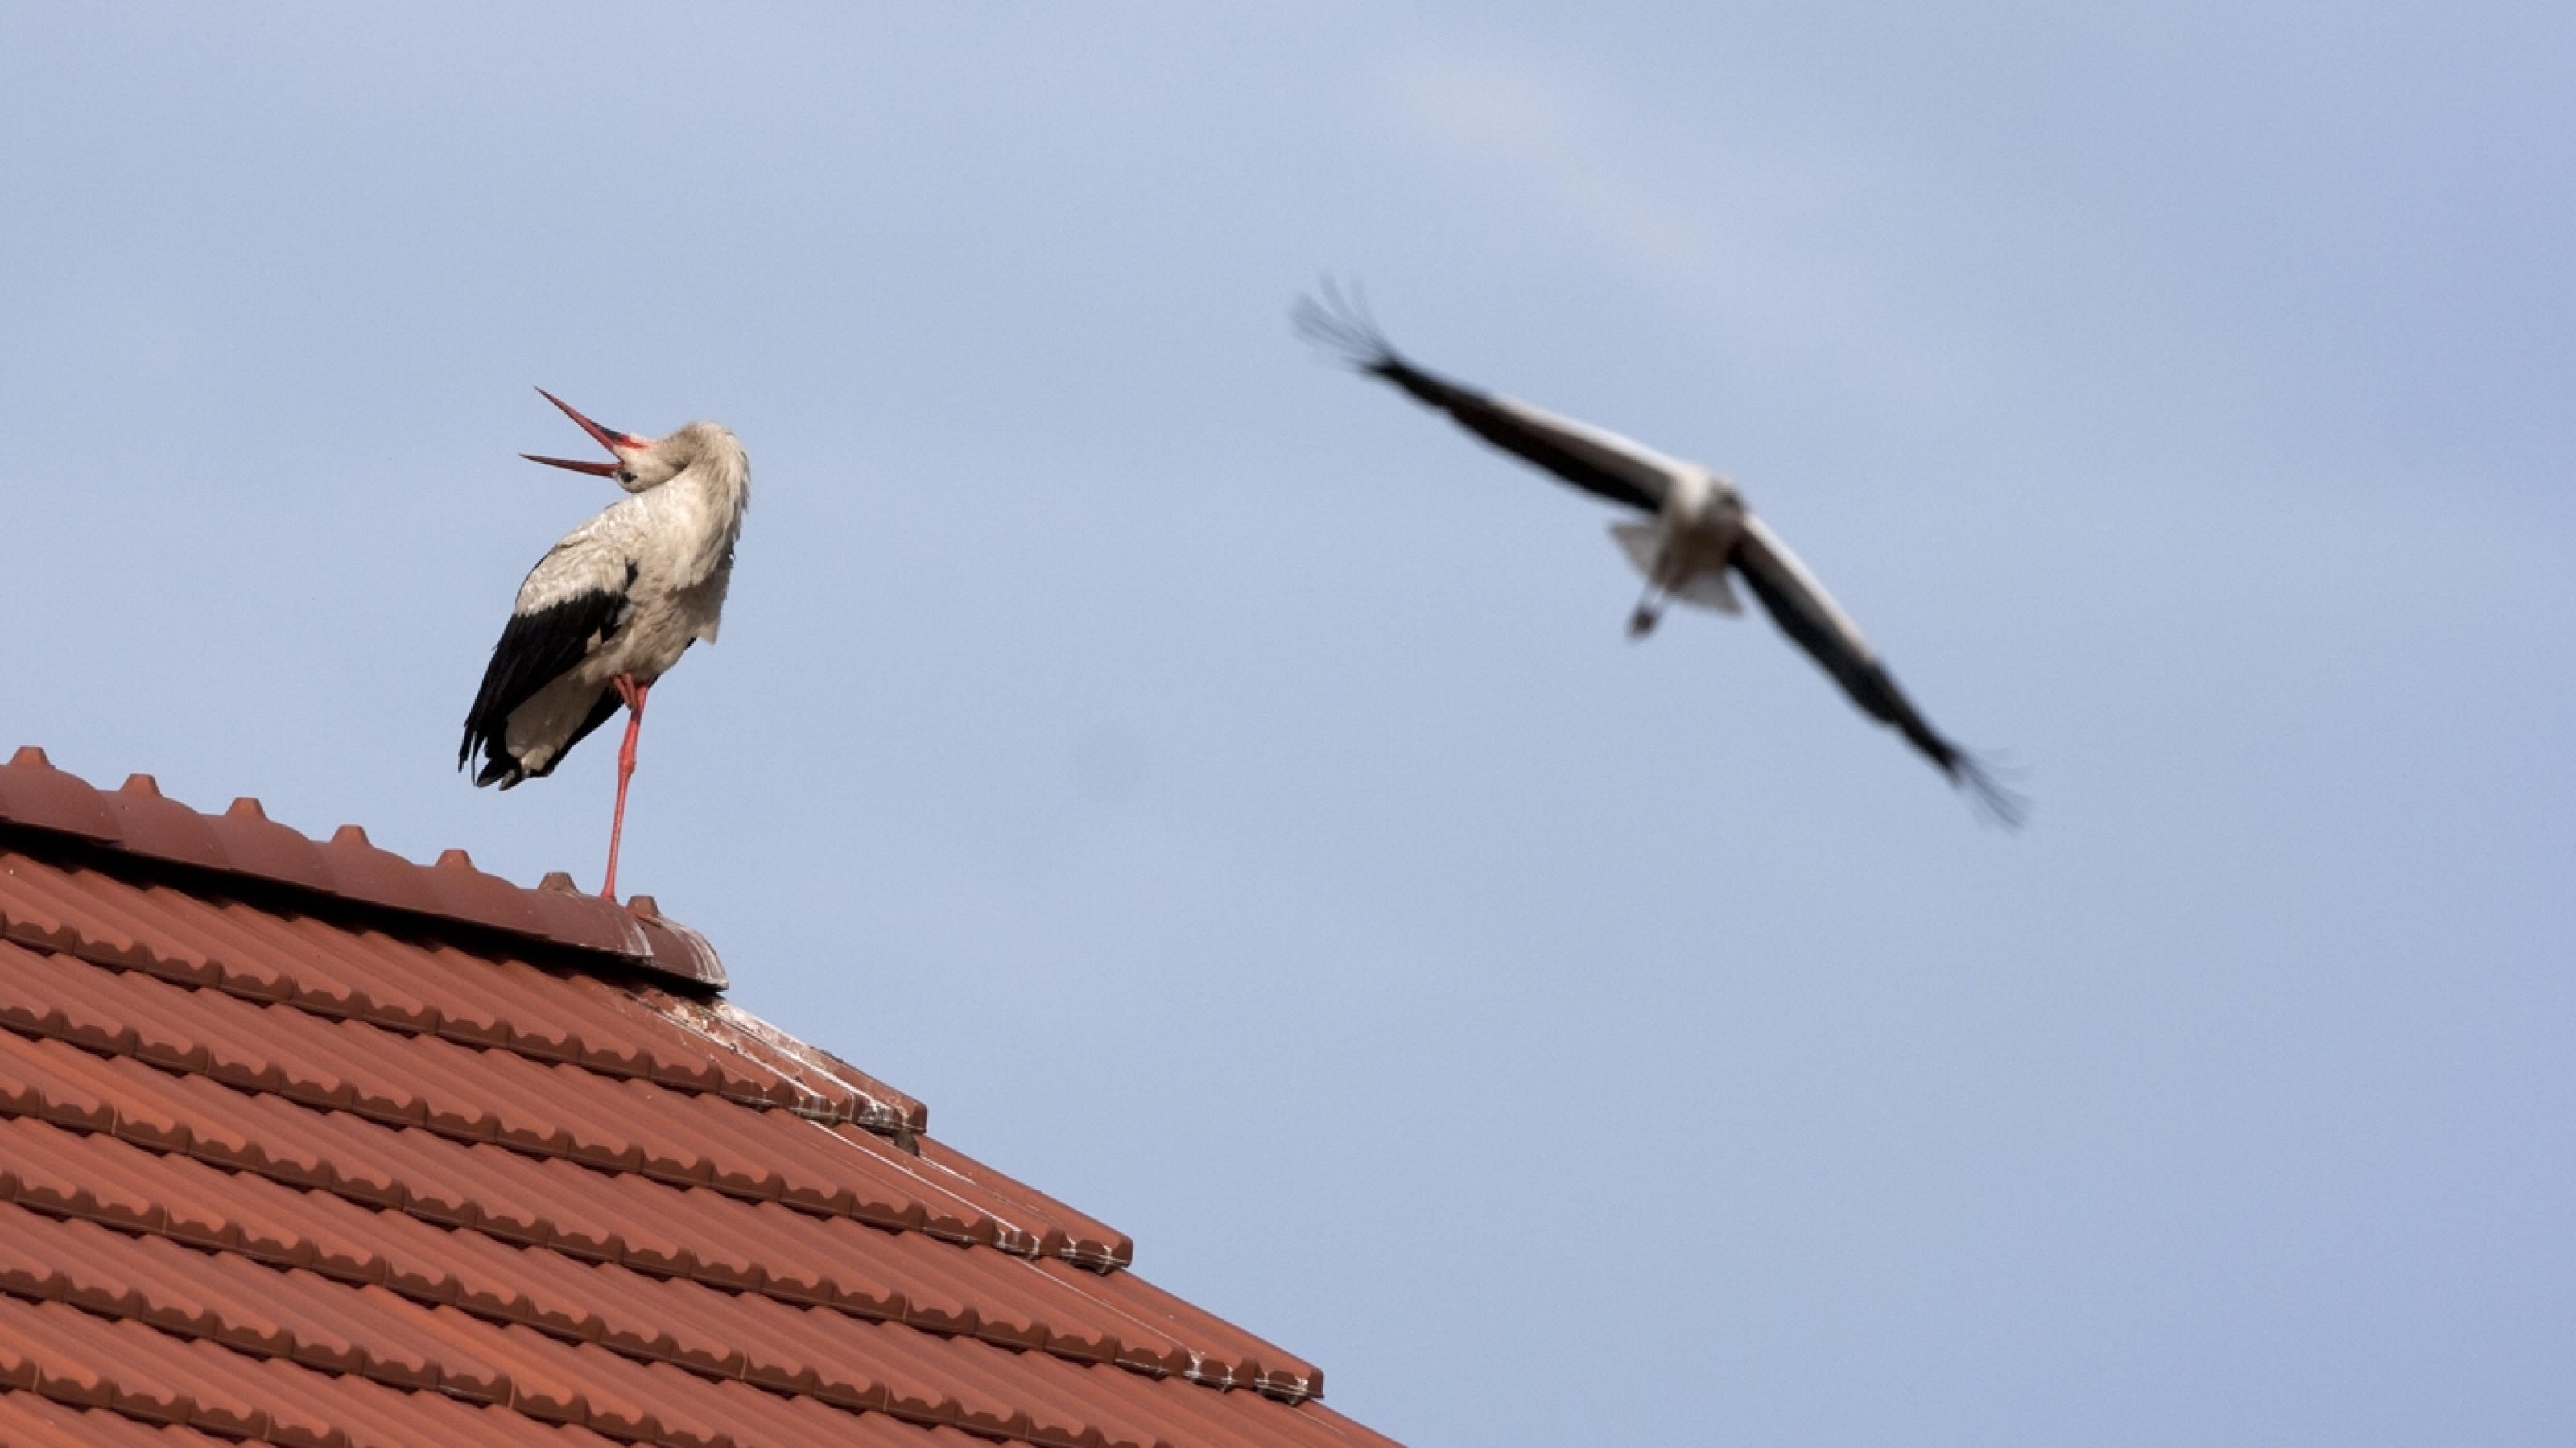 Weißstorchmännchen sitzt auf dem Dach und legt den Kopf zum Balzen nach hinten, das Weibchen ist schon im Anflug.